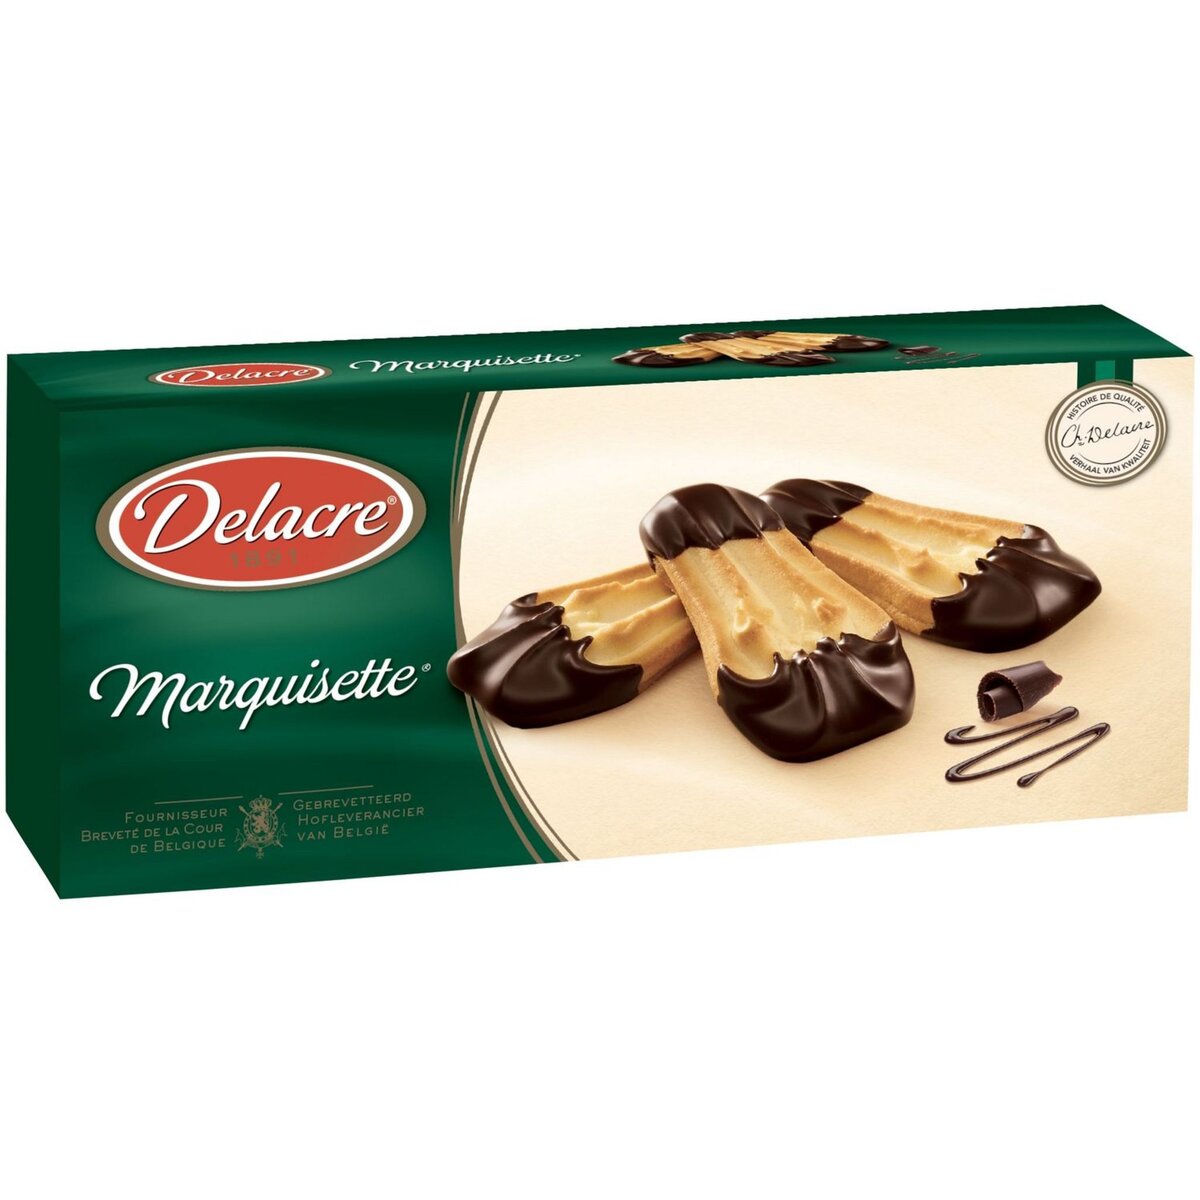 DELACRE Marquisette biscuits nappés de chocolat 100g